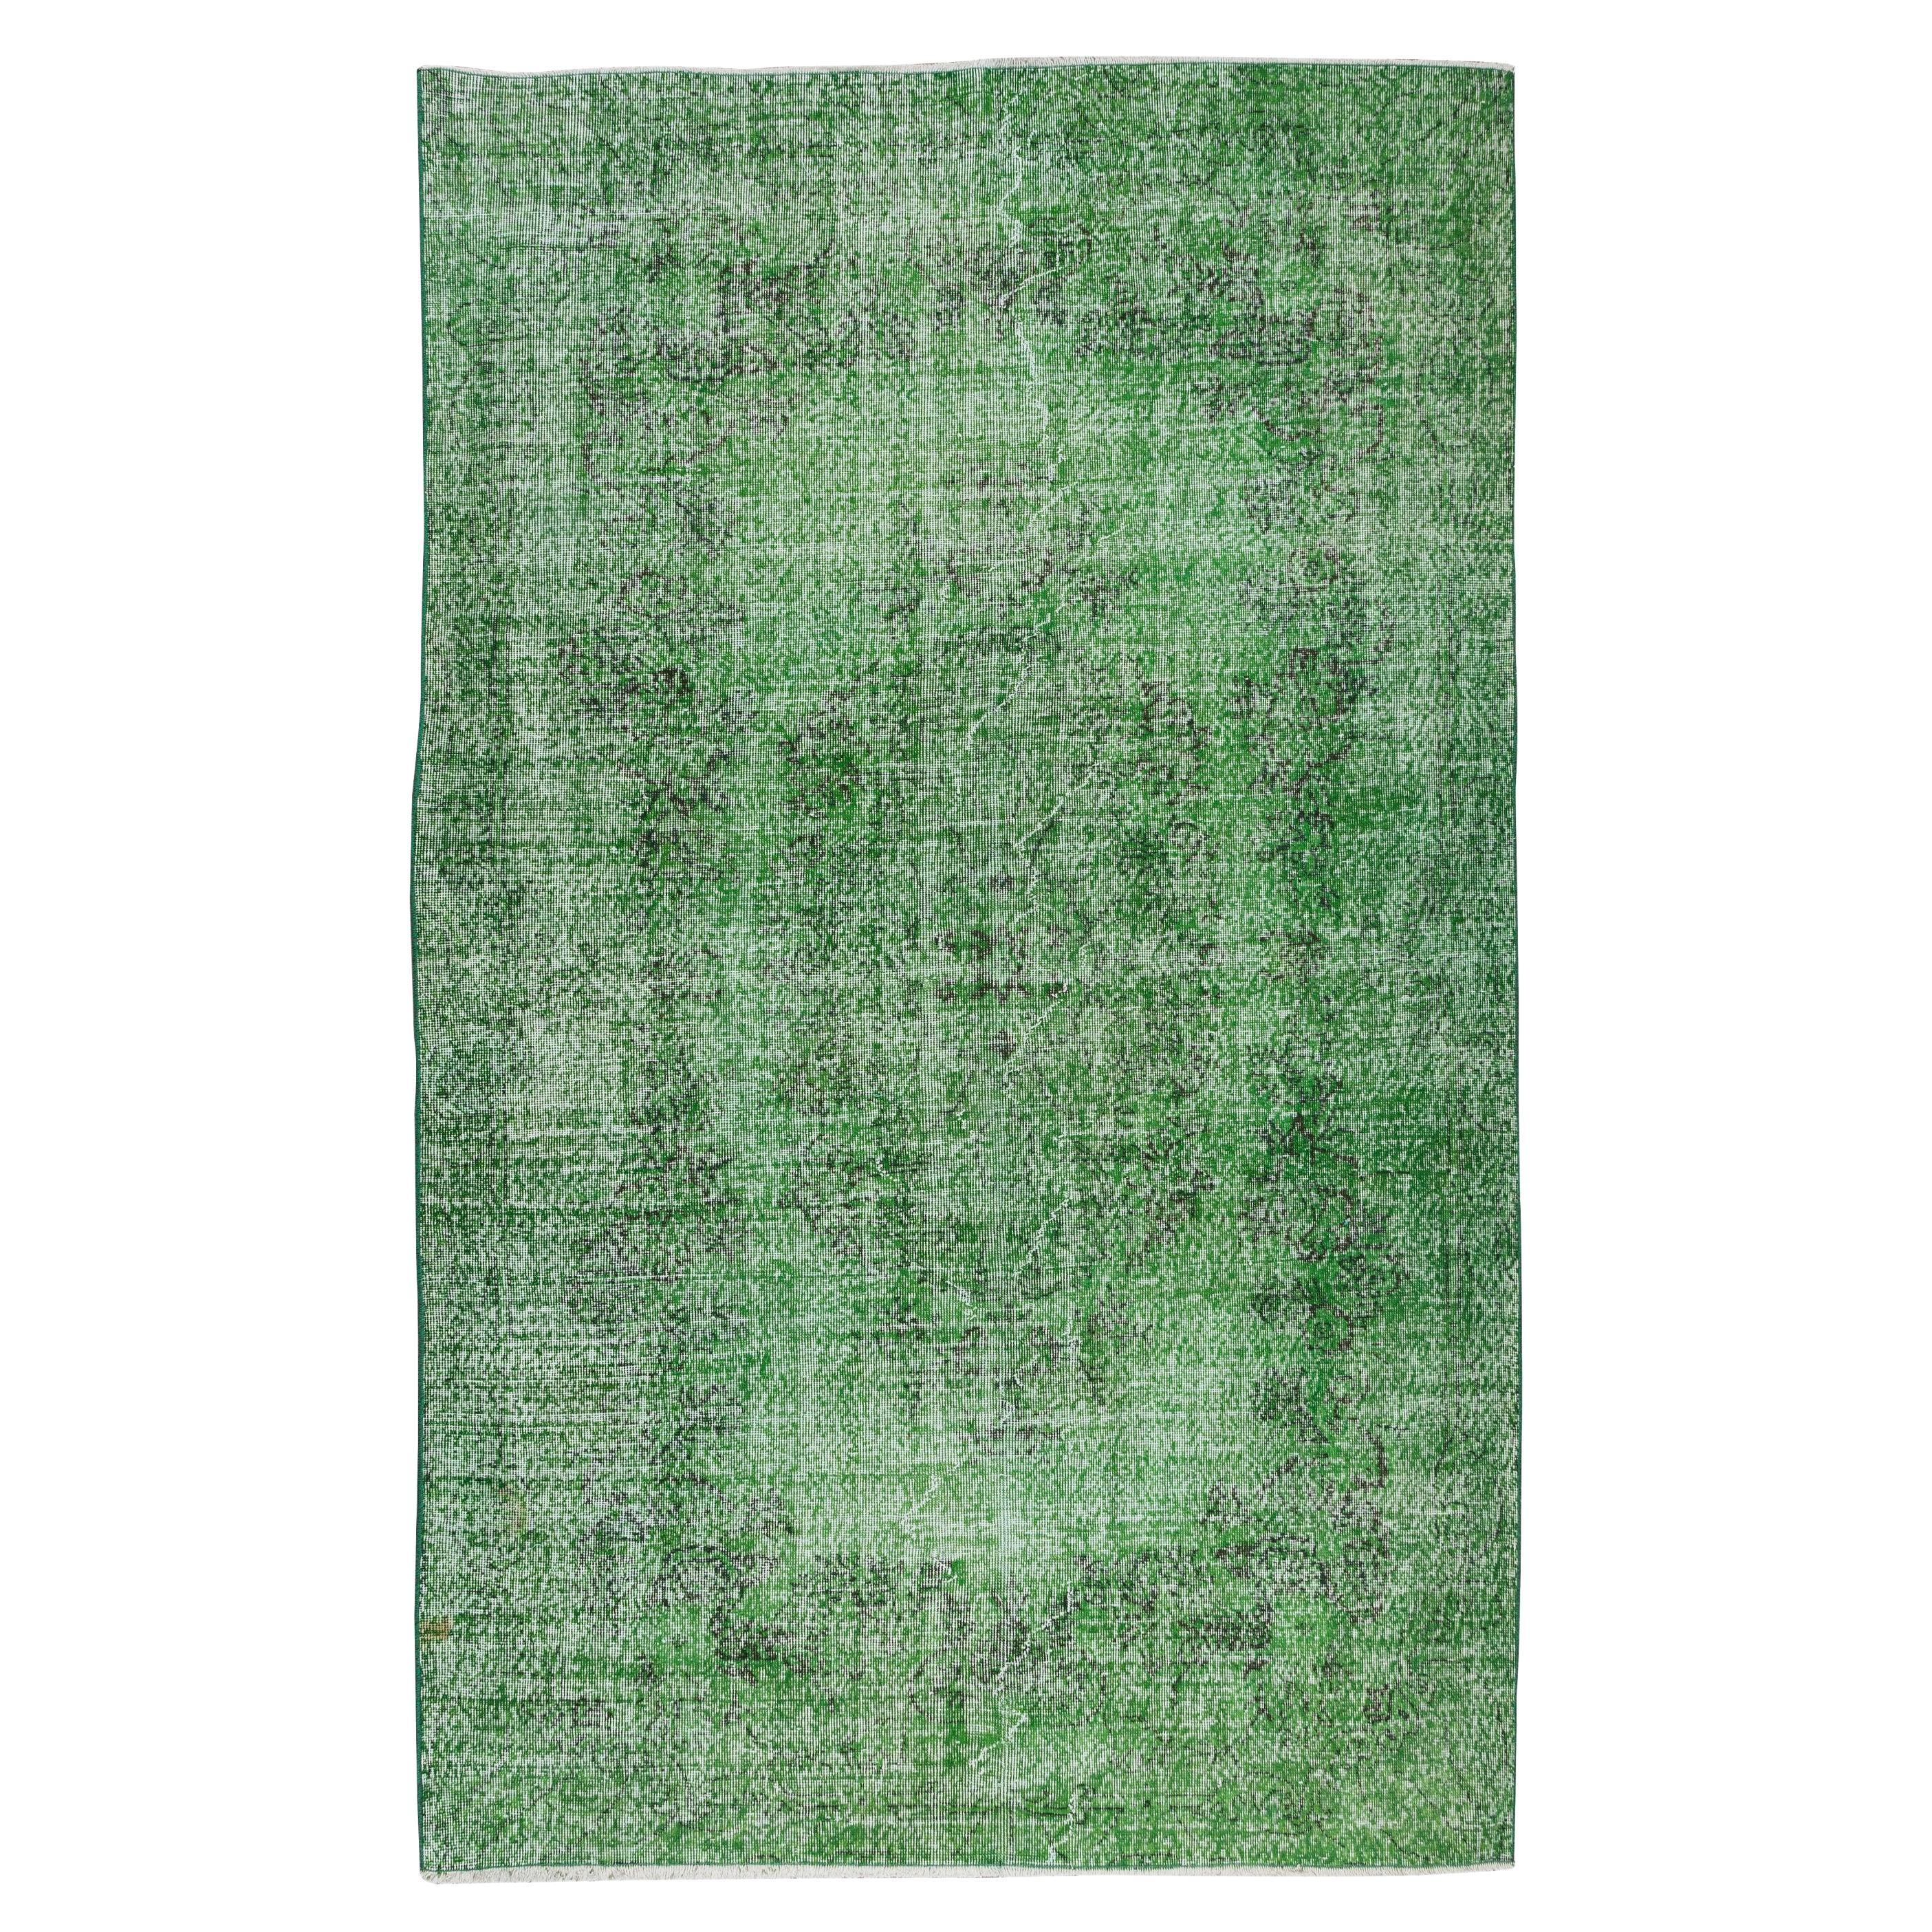 6.2x10 Ft Turkish Handmade Vintage Wool Rug, Modern Green Carpet, Floor Covering